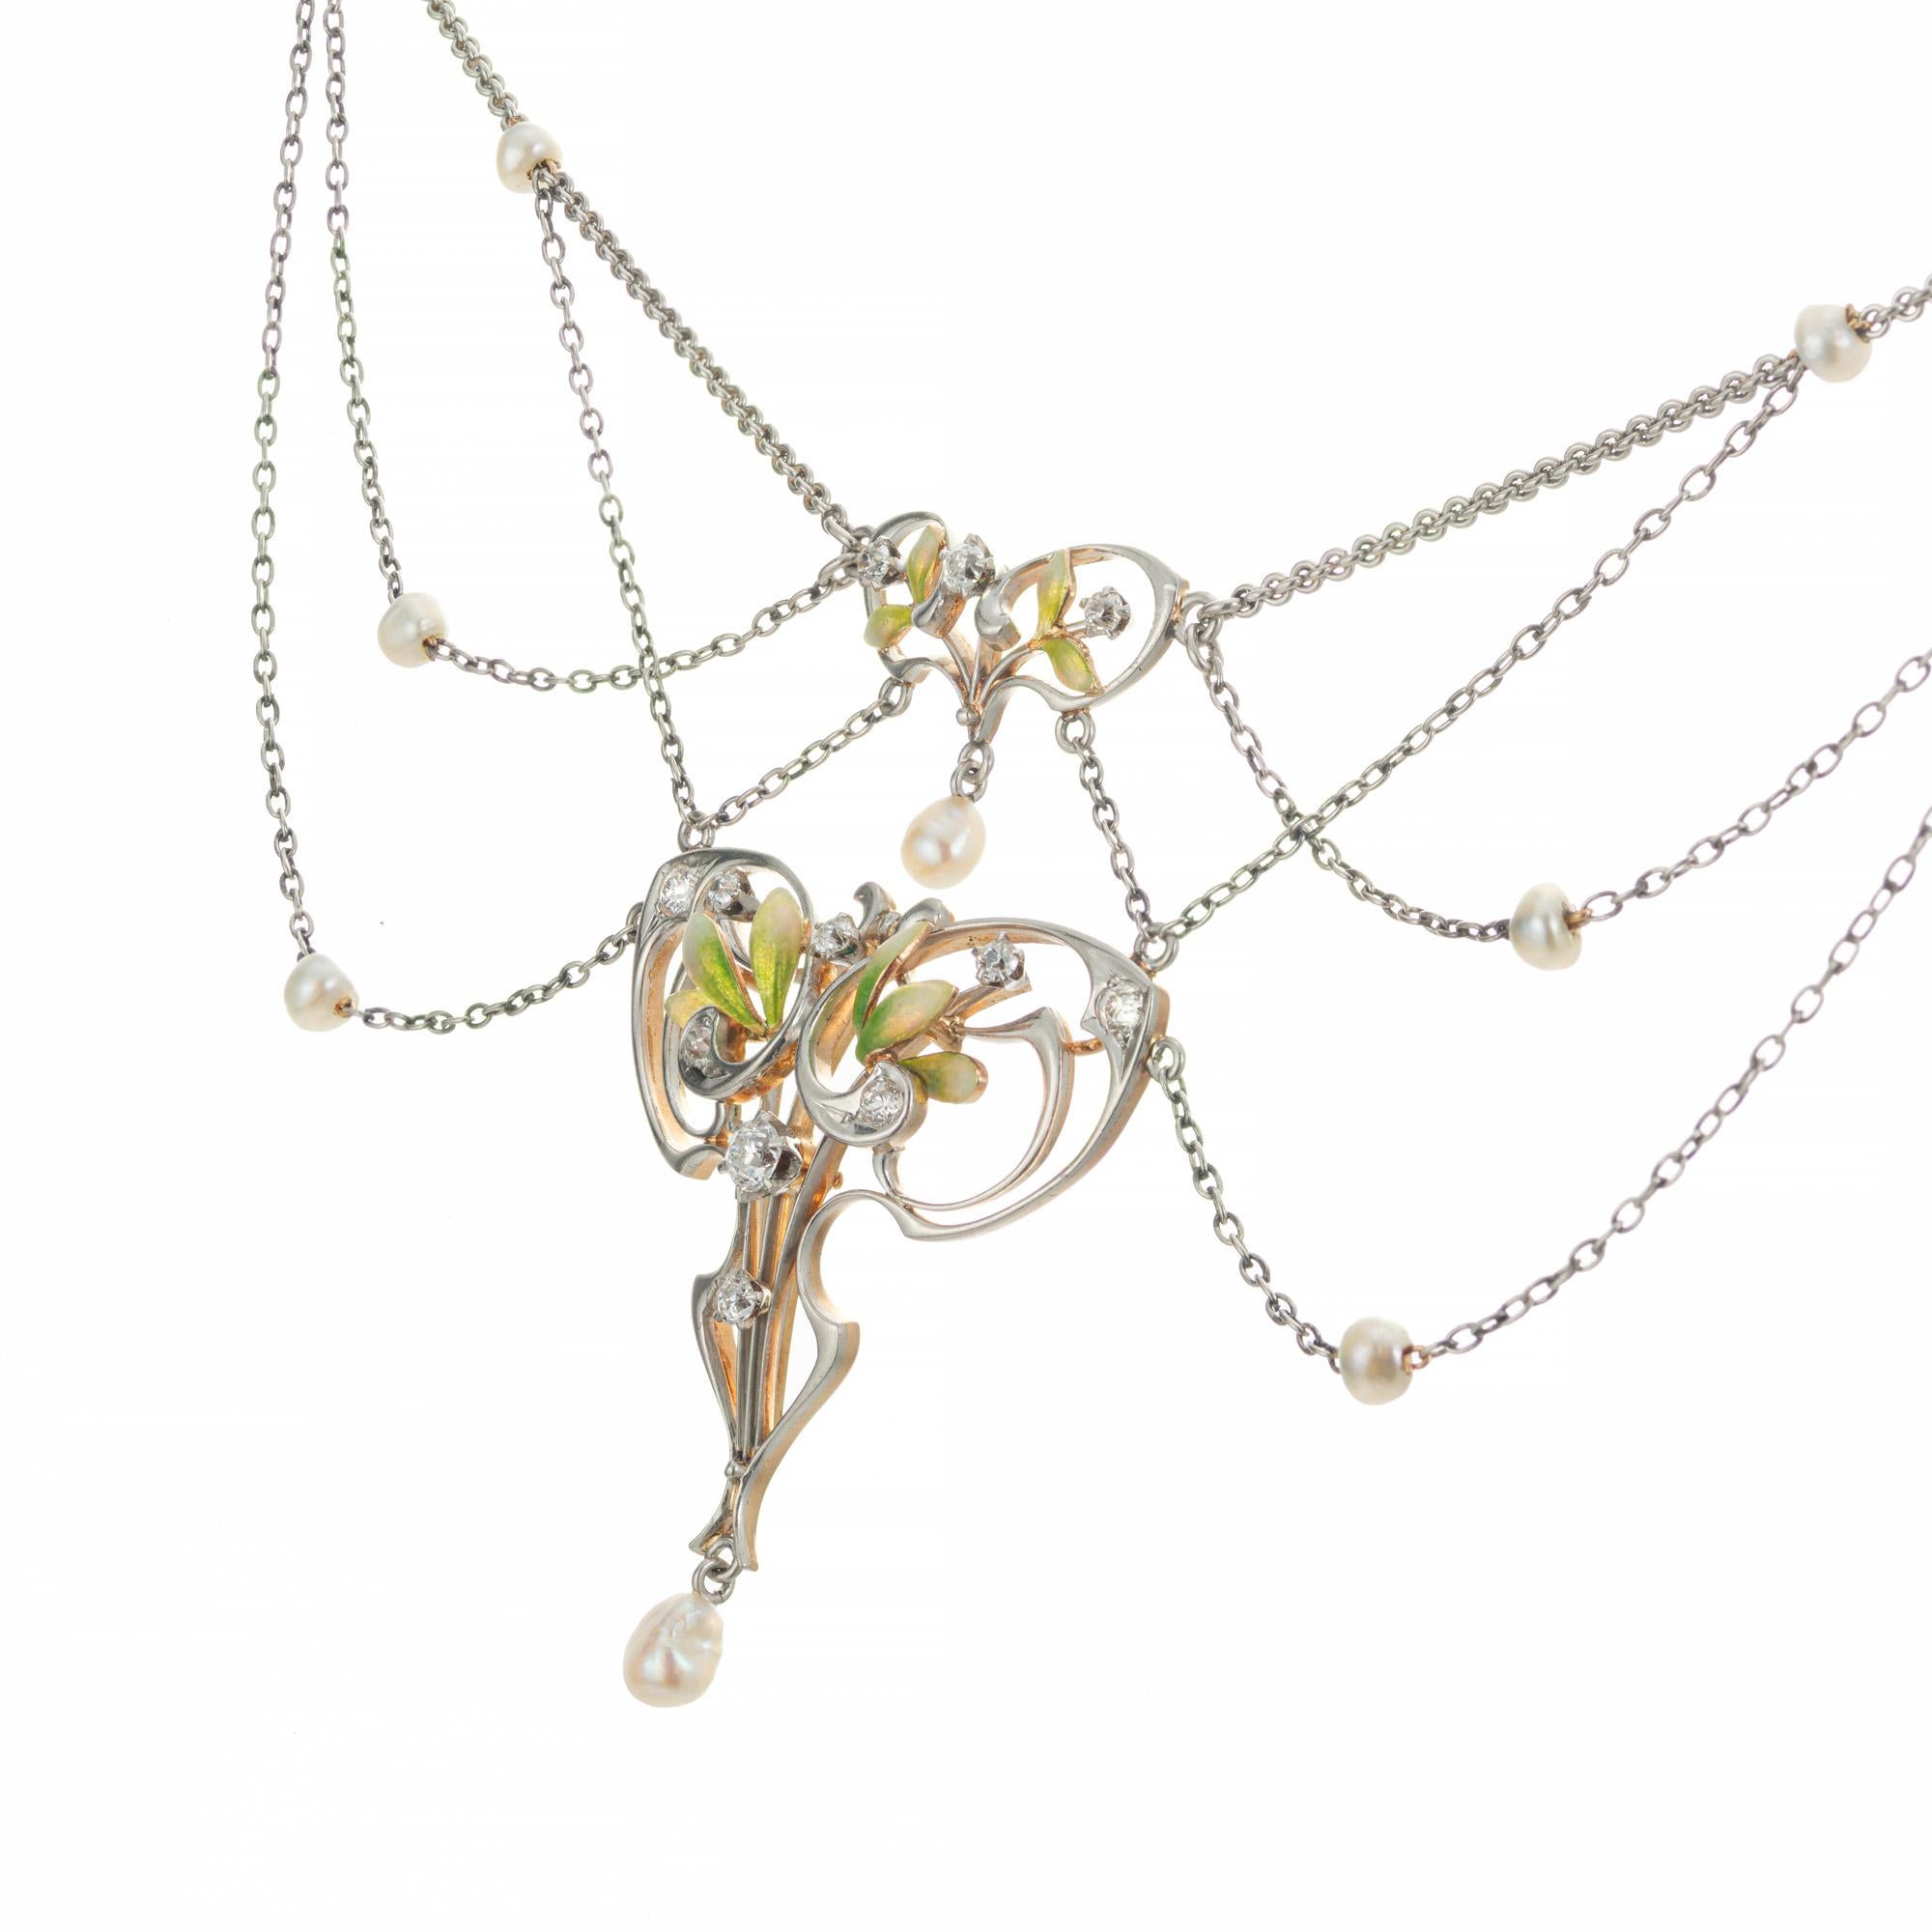 Collier pendentif Art Nouveau en perles et diamants. circa 1890. Le pendentif en émail floral est en platine à l'avant et en or rose 14k à l'arrière. Une perle d'eau salée blanche naturelle certifiée par le GIA, ainsi que 9 perles blanches rondes